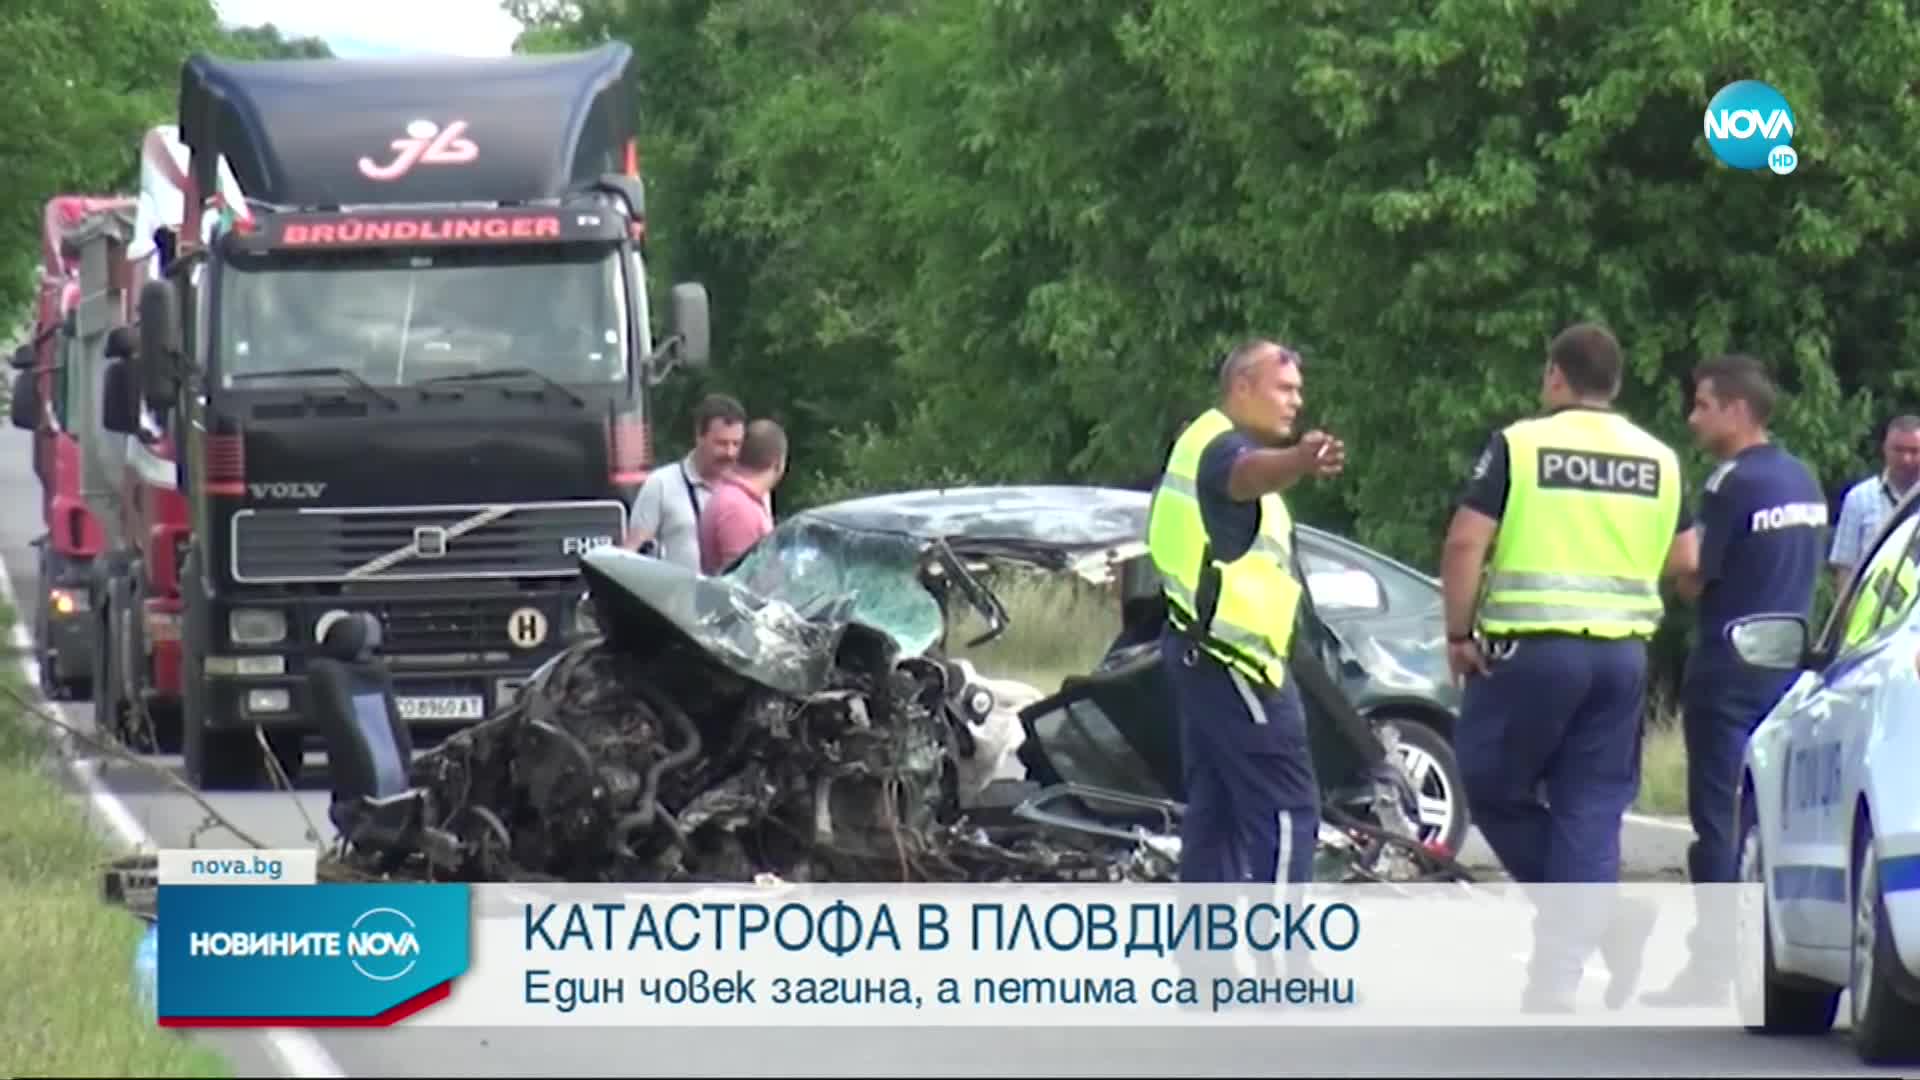 Катастрофа в Пловдивско, има загинал